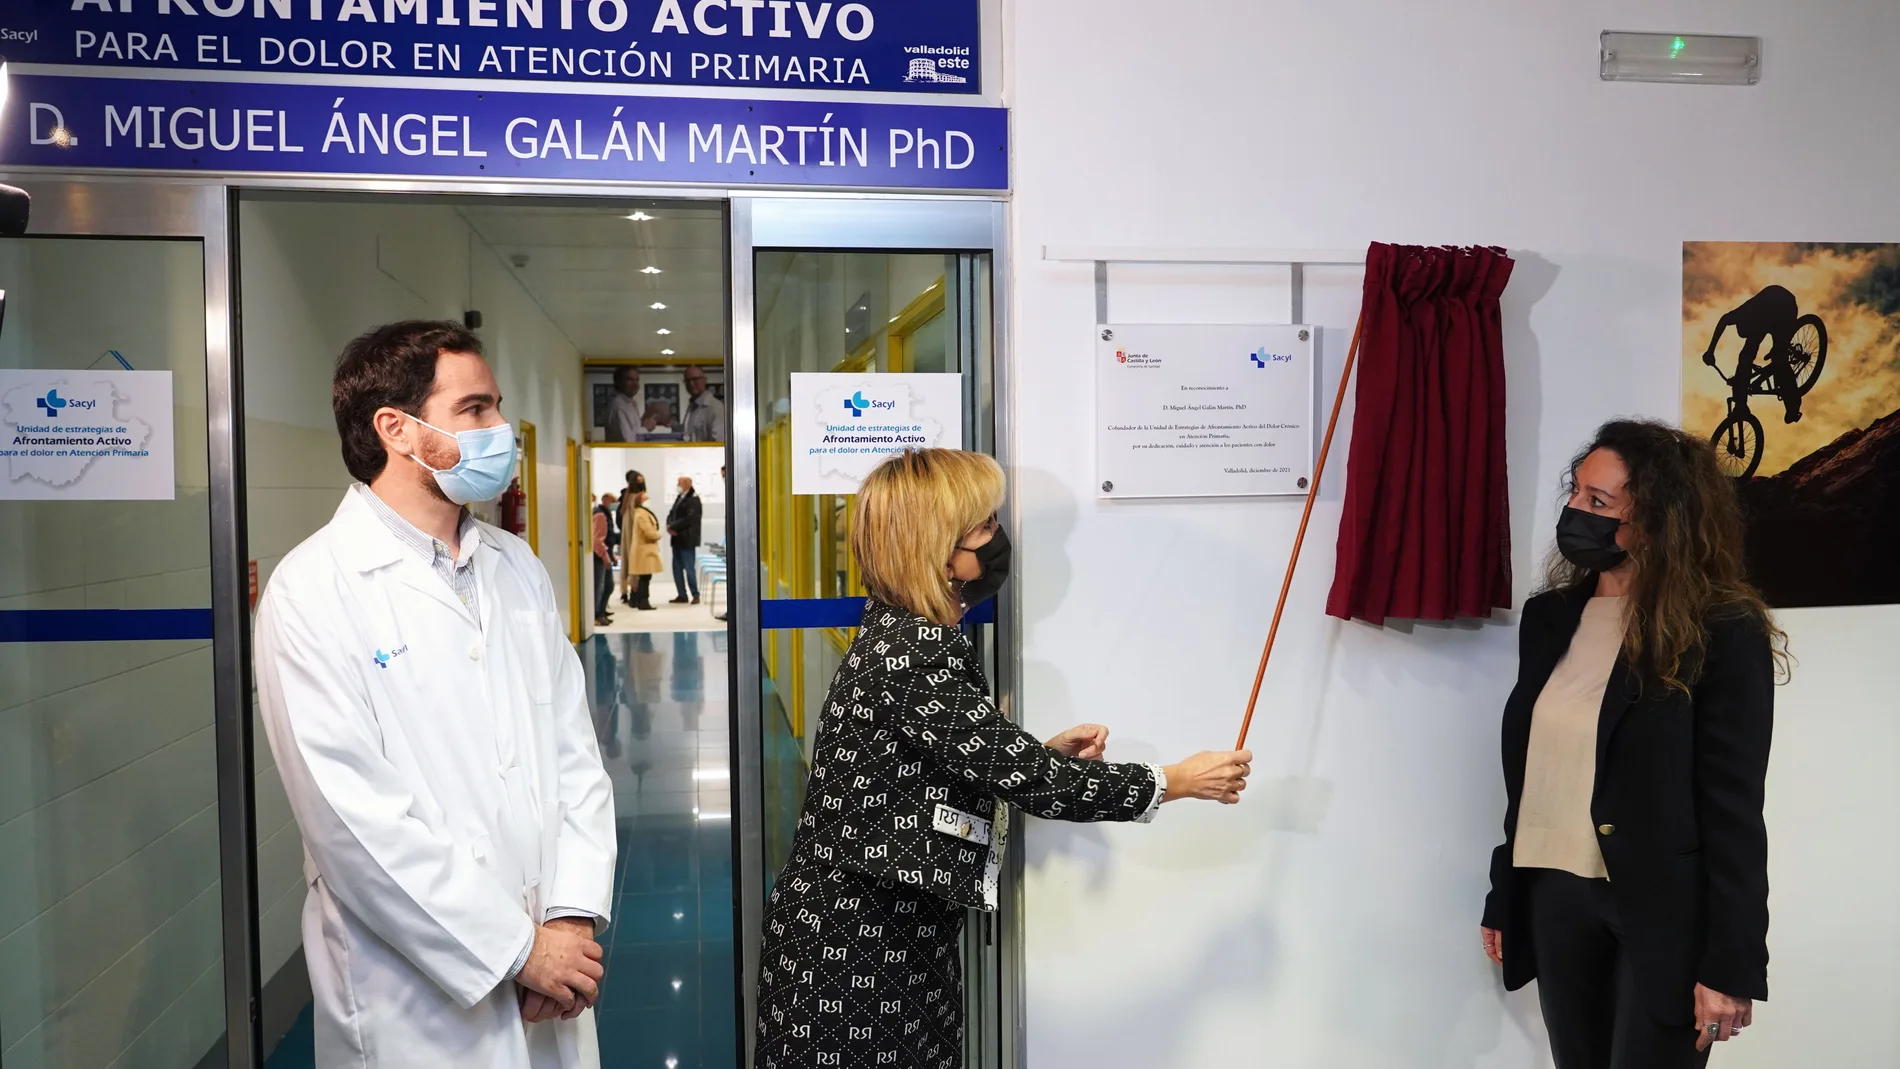 La consejera de Sanidad, Verónica Casado, asiste al homenaje de la ''Unidad de estrategias de afrontamiento activo de dolor en Atención Primaria'' al doctor Miguel Ángel Galán